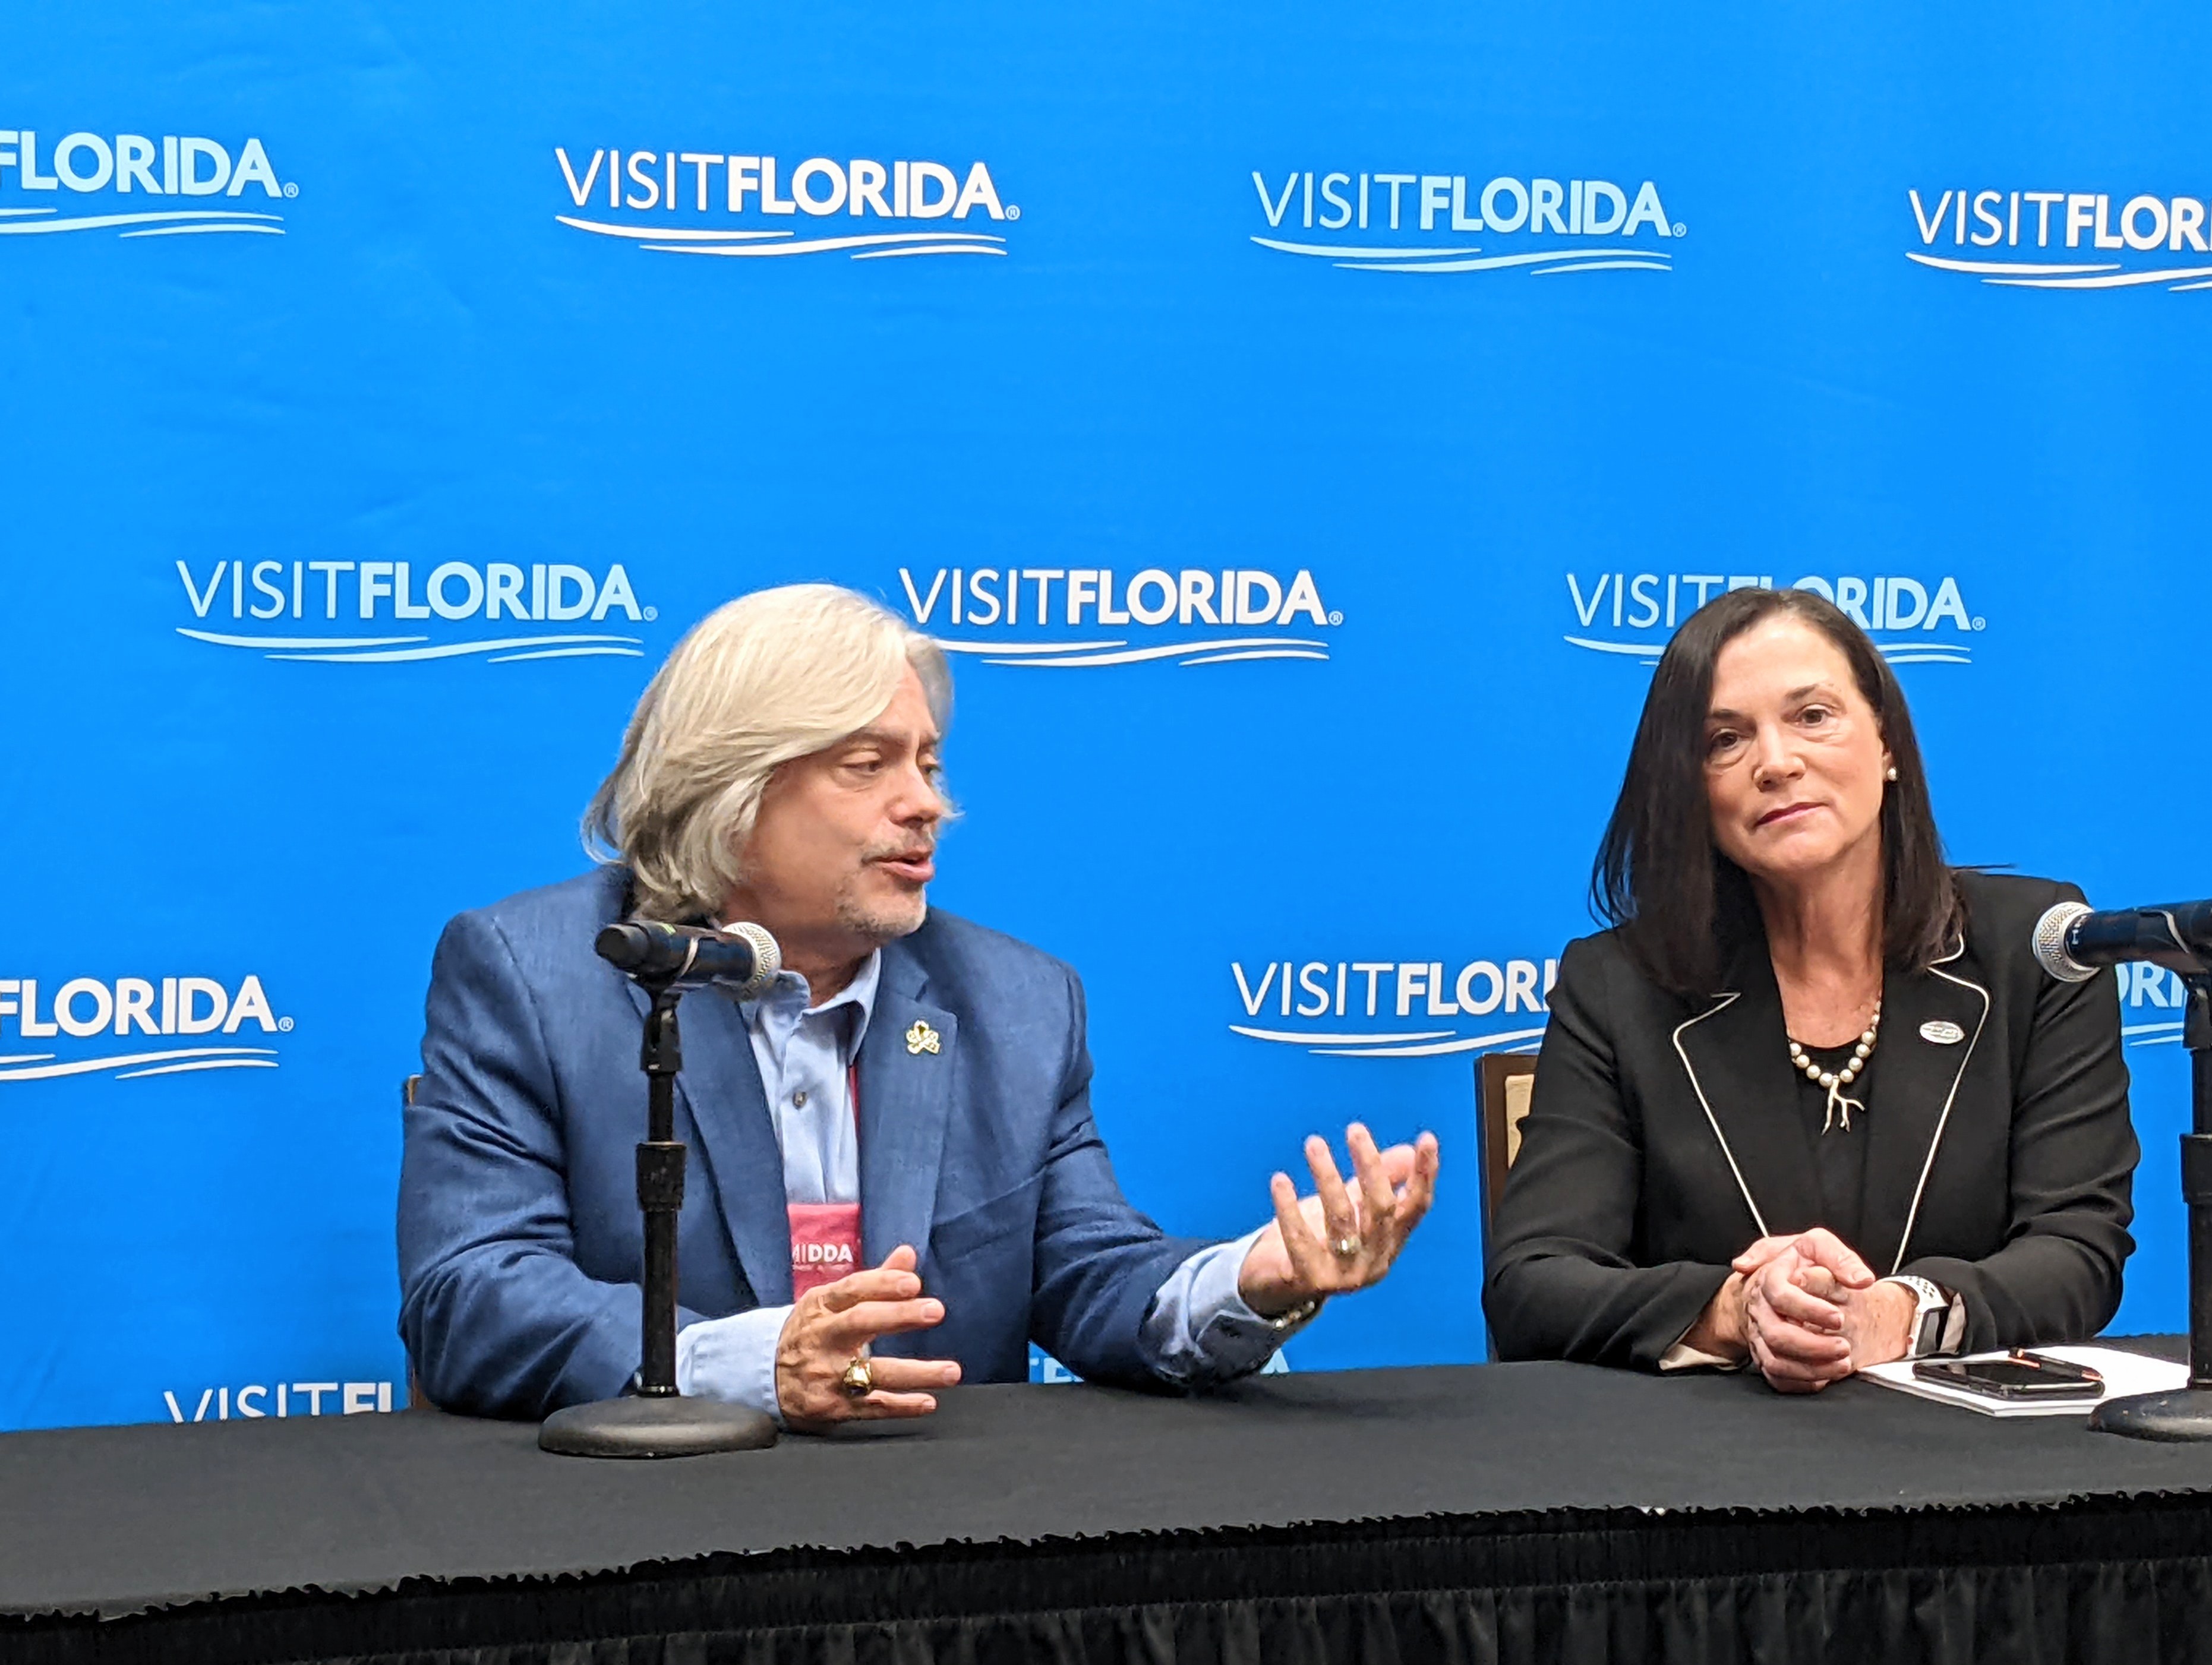 Santiago Corrada, CEO von Tampa Bay, und Dana Young, Präsidentin von Visit Florida, auf der Reisemesse Florida Huddle in Tampa